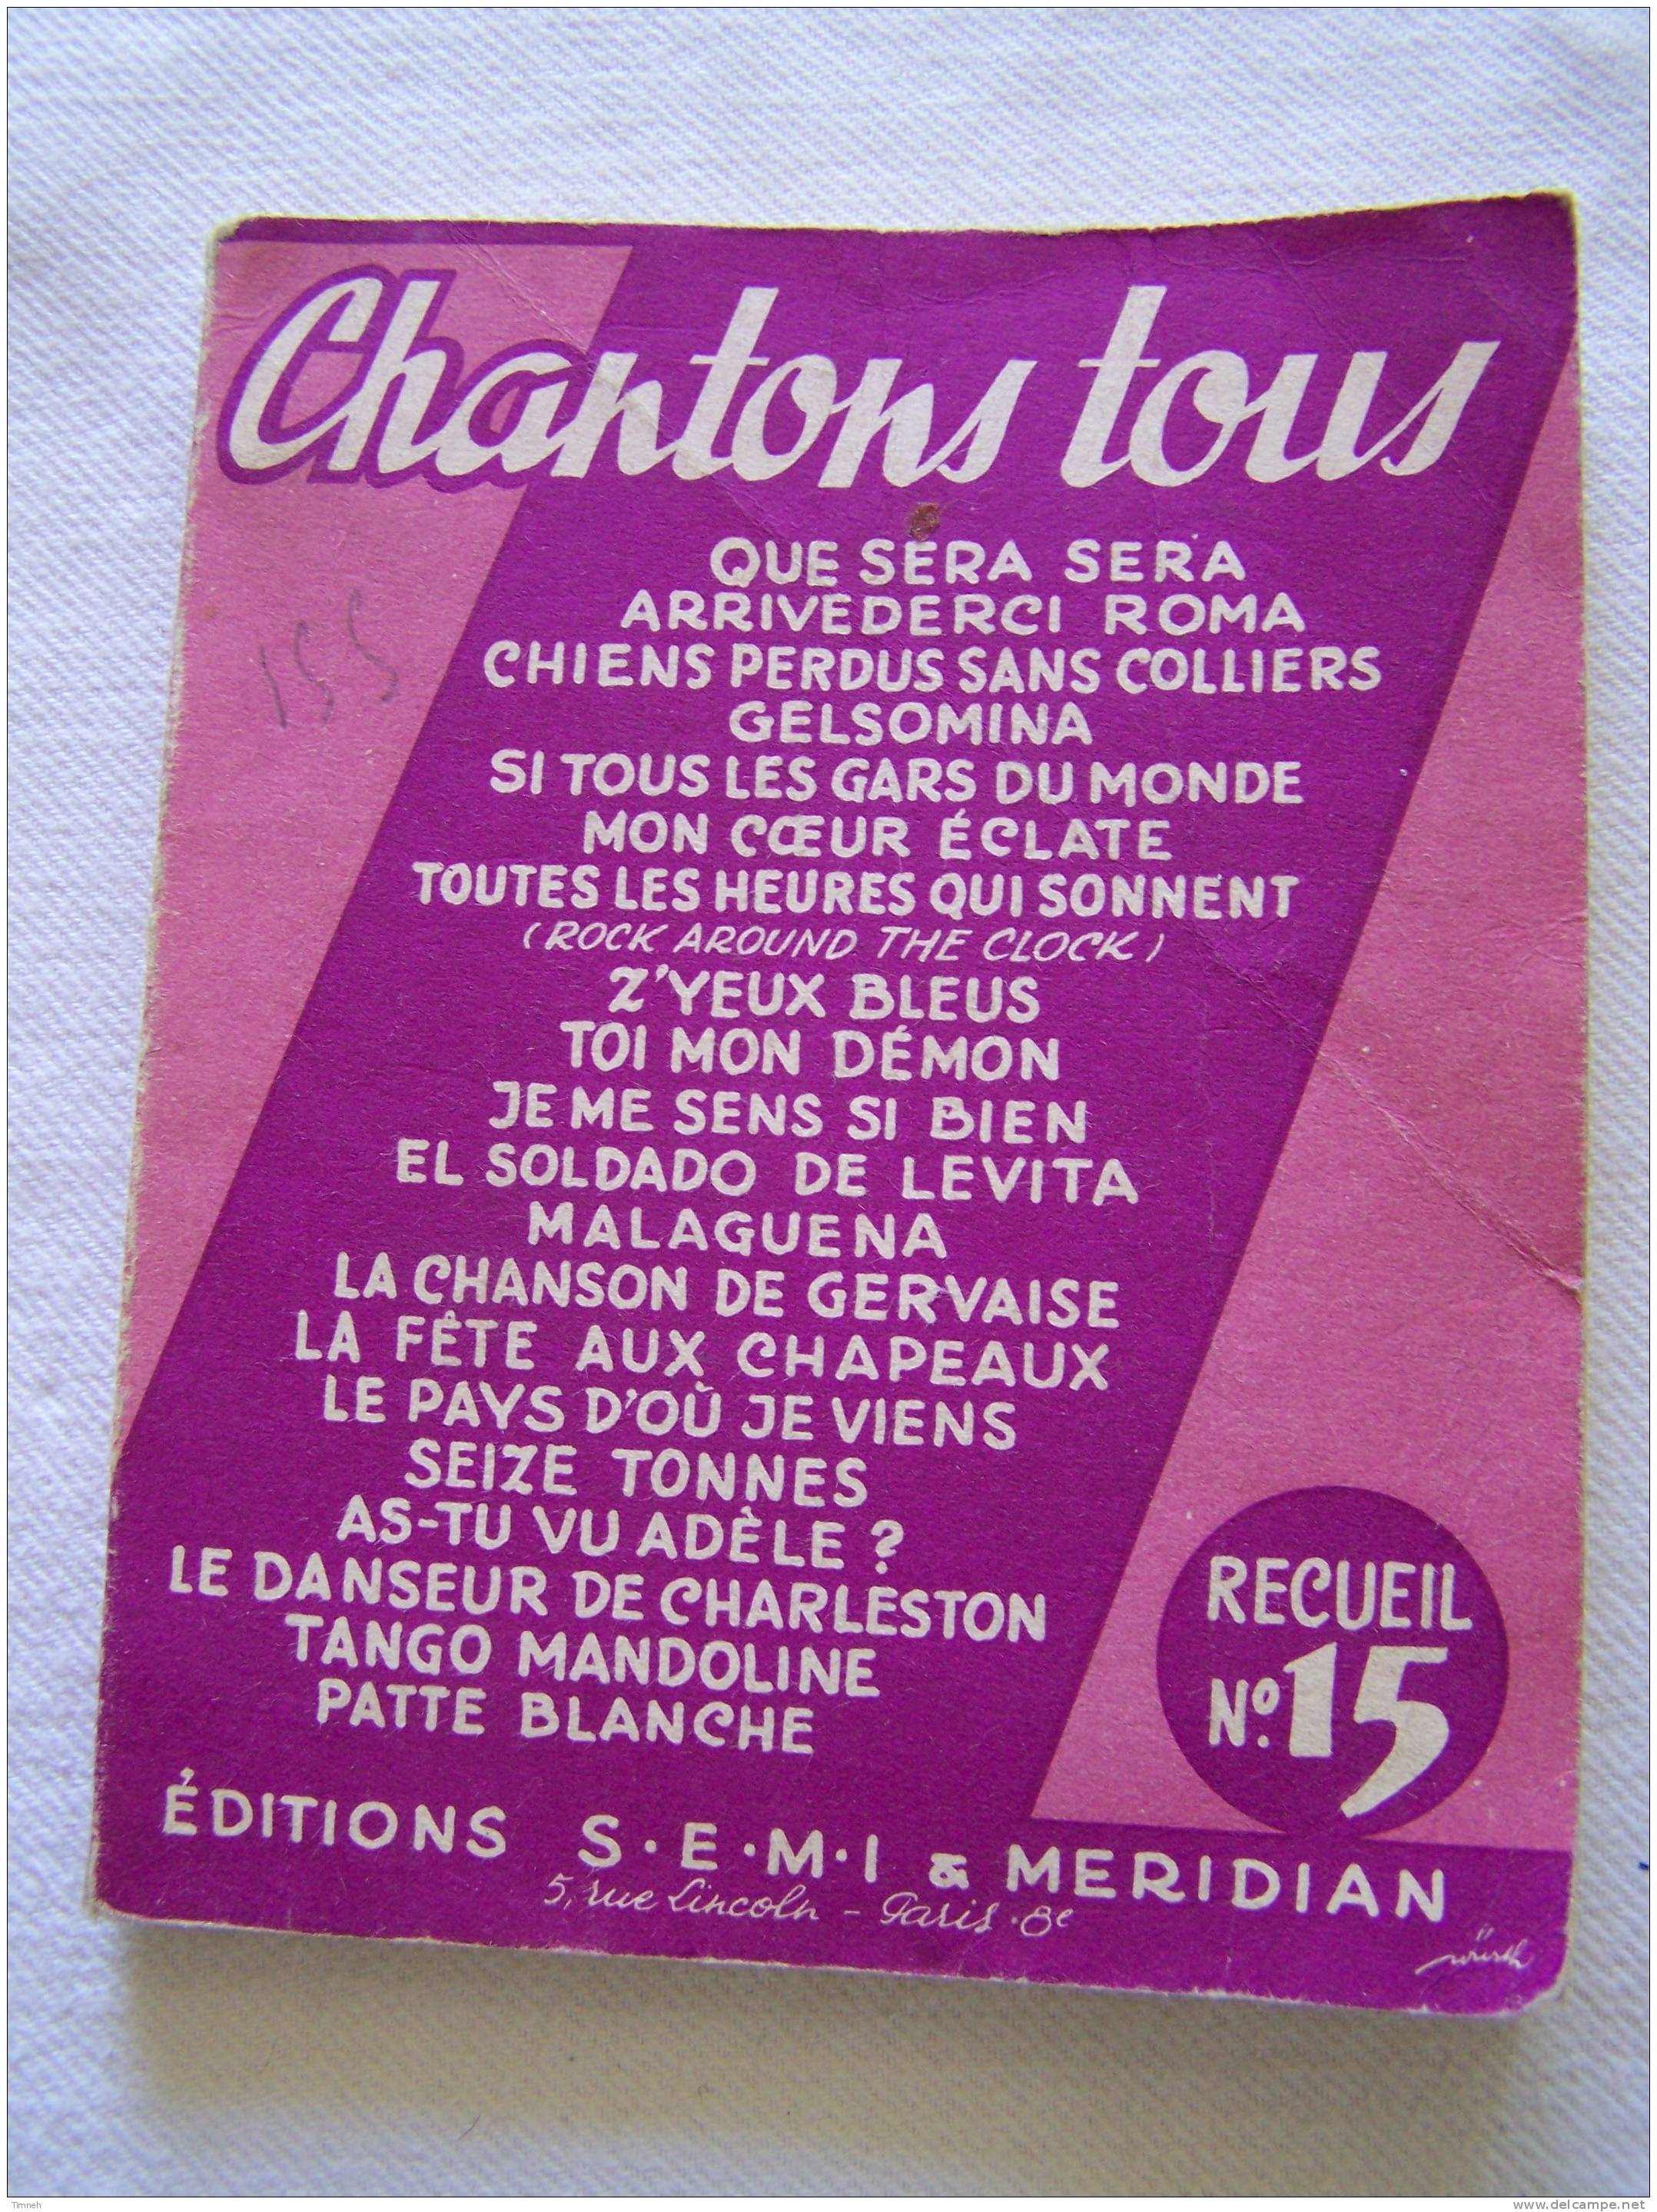 Petit Livret Ancien-CHANTONS TOUS RECUEIL N°15-EDITIONS MERIDIAN § S.E.M.I. - Musik